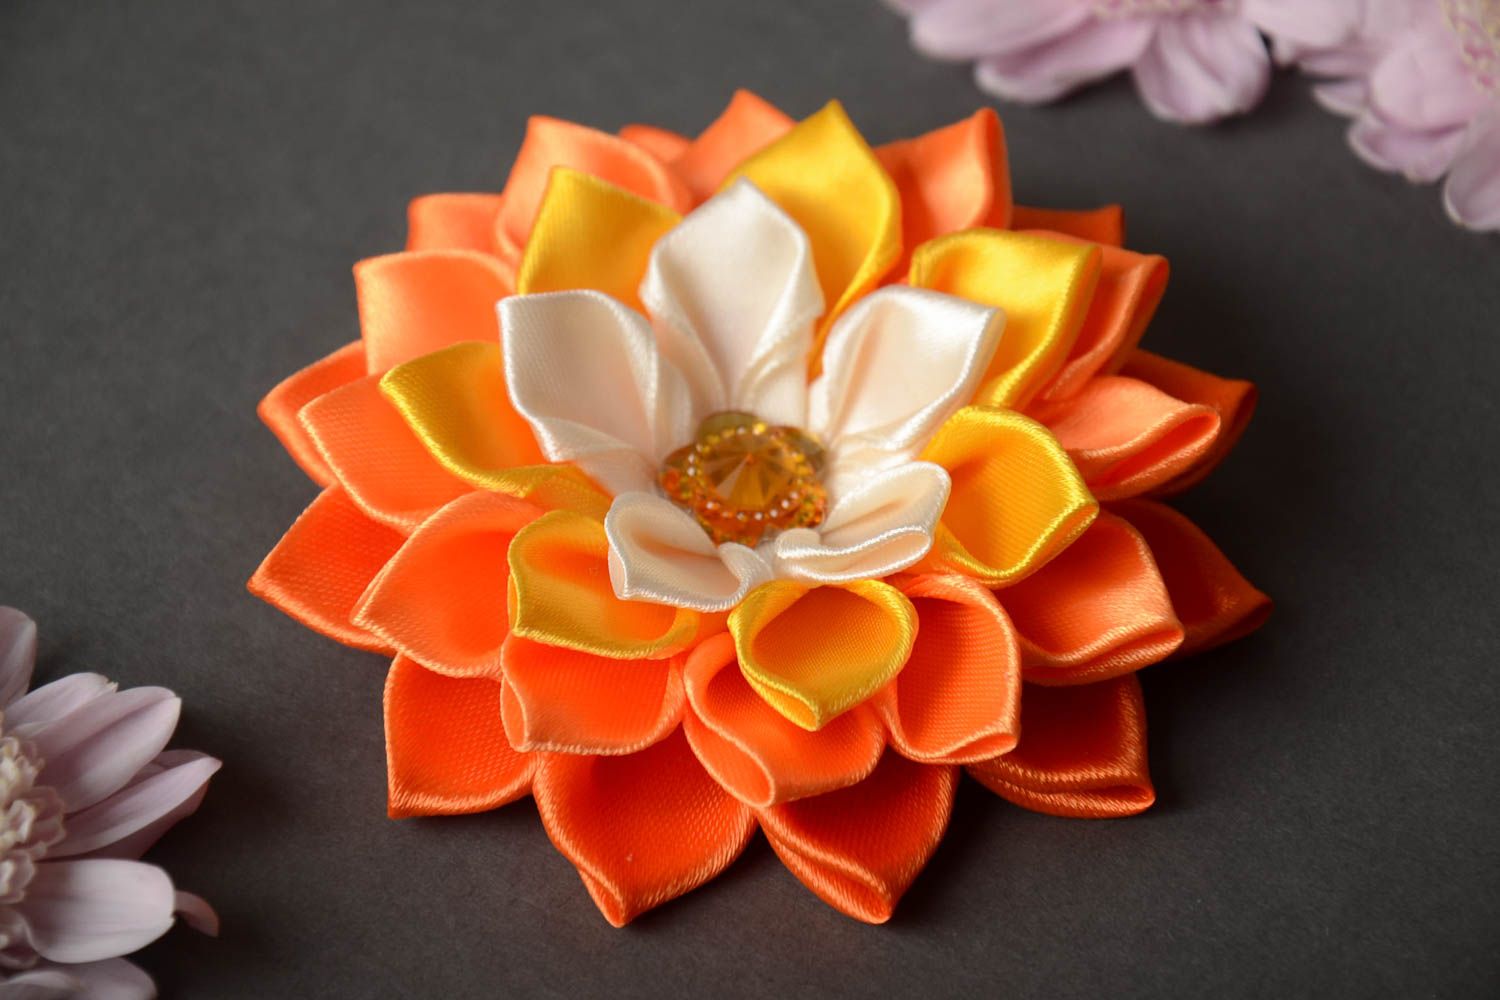 Цветок в технике канзаши заготовка для аксессуара оранжевый крупный хэнд мейд фото 1